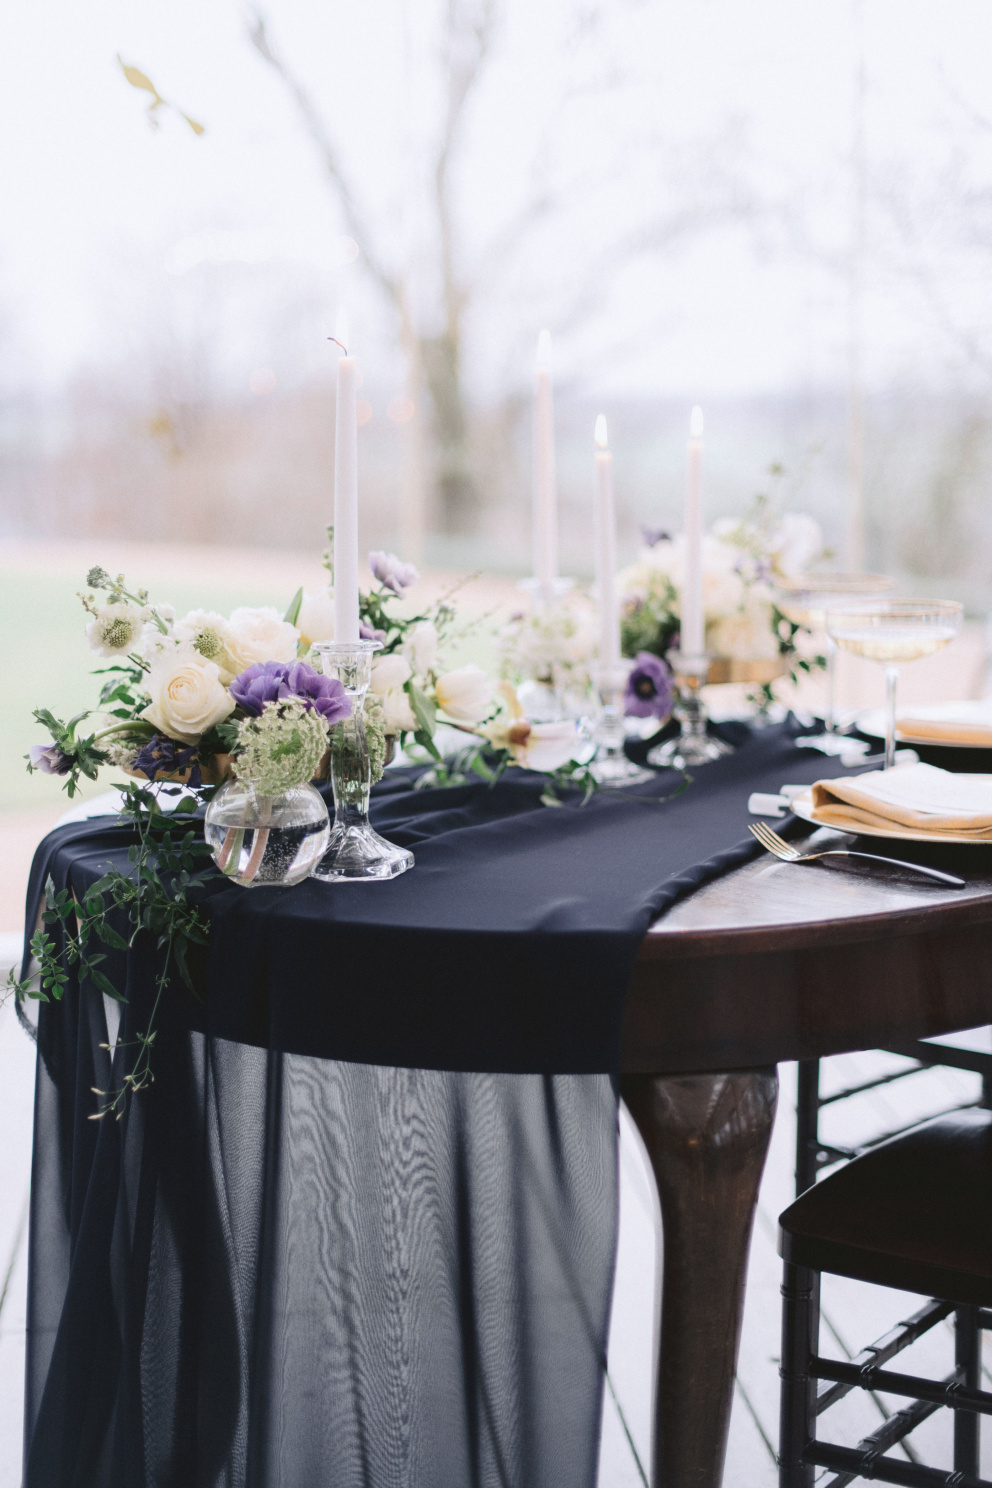 Zářný příklad toho, že i černá barva má na svatbě své využití. Elegantní tmavý ubrus tvoří kontrast s květinami v jemných barvách. Foto: Matěj Třasák. Výzdoba: Ivan Šablatúra.
